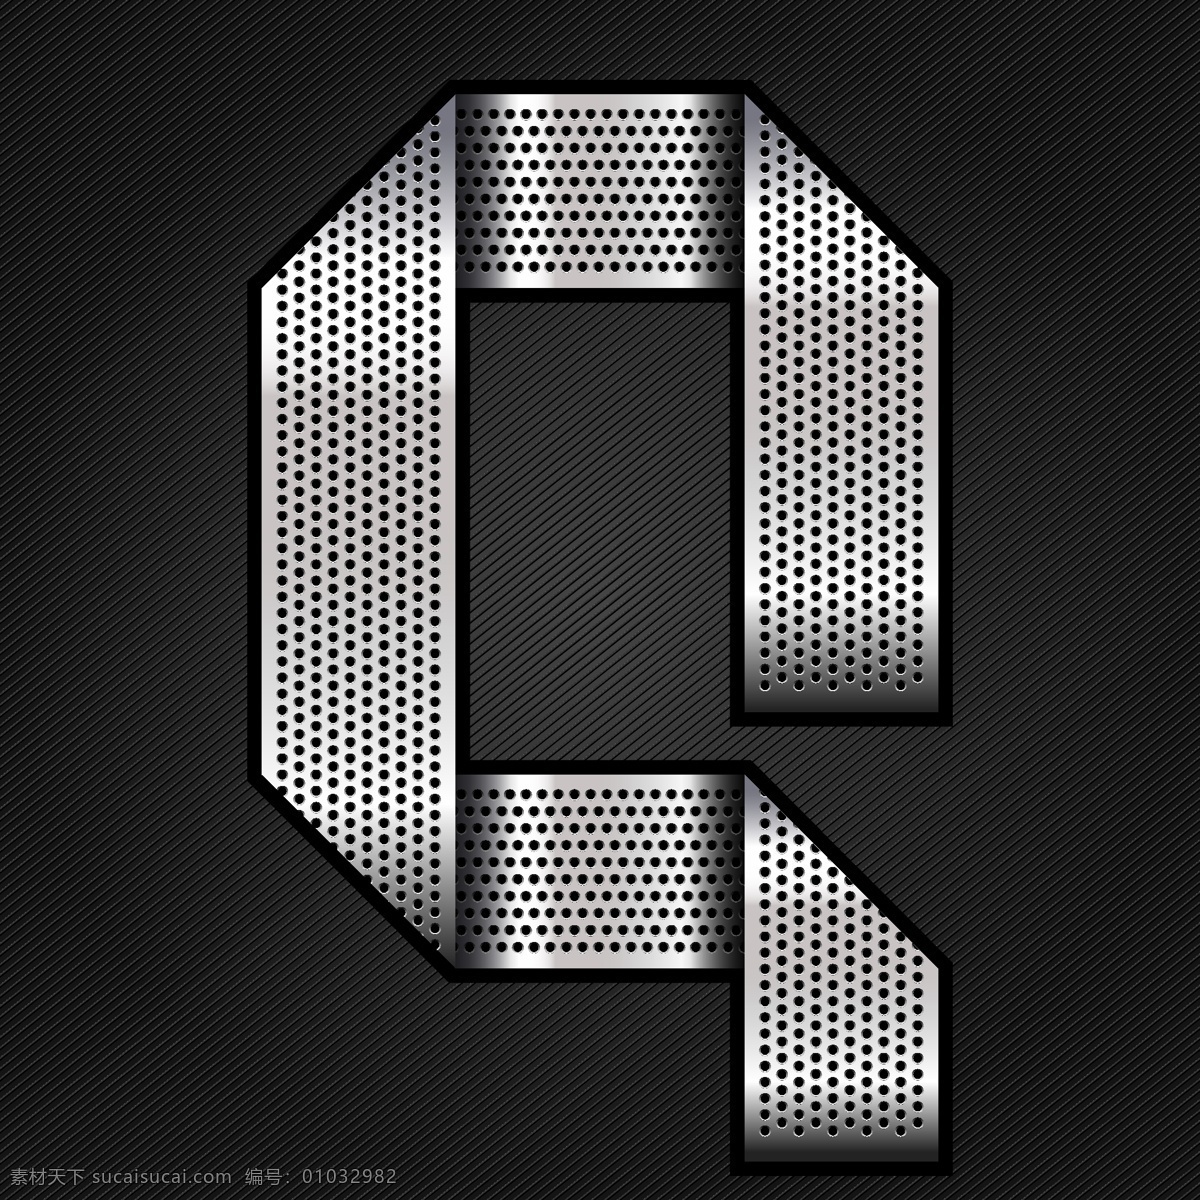 金属字母g 金属字母 g 素材设计 立体 灰色 书画文字 文化艺术 矢量素材 黑色